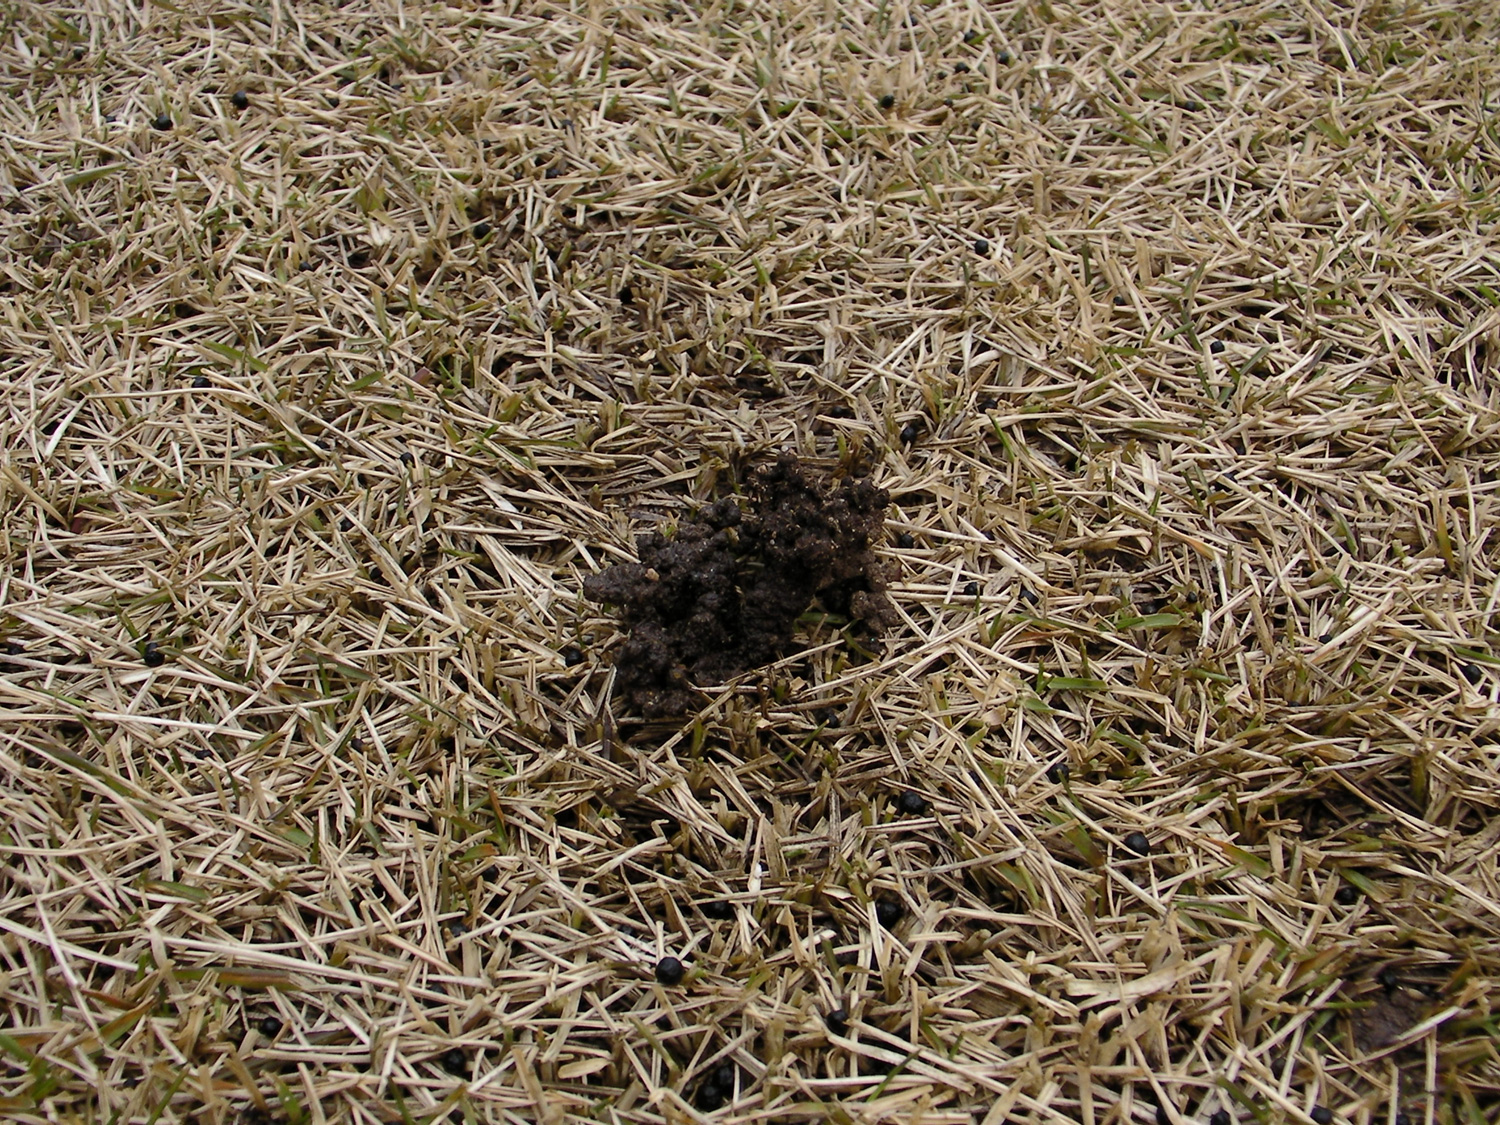 芝生にできる小さな土の盛り上がりはミミズの仕業です【ミミズ対策】